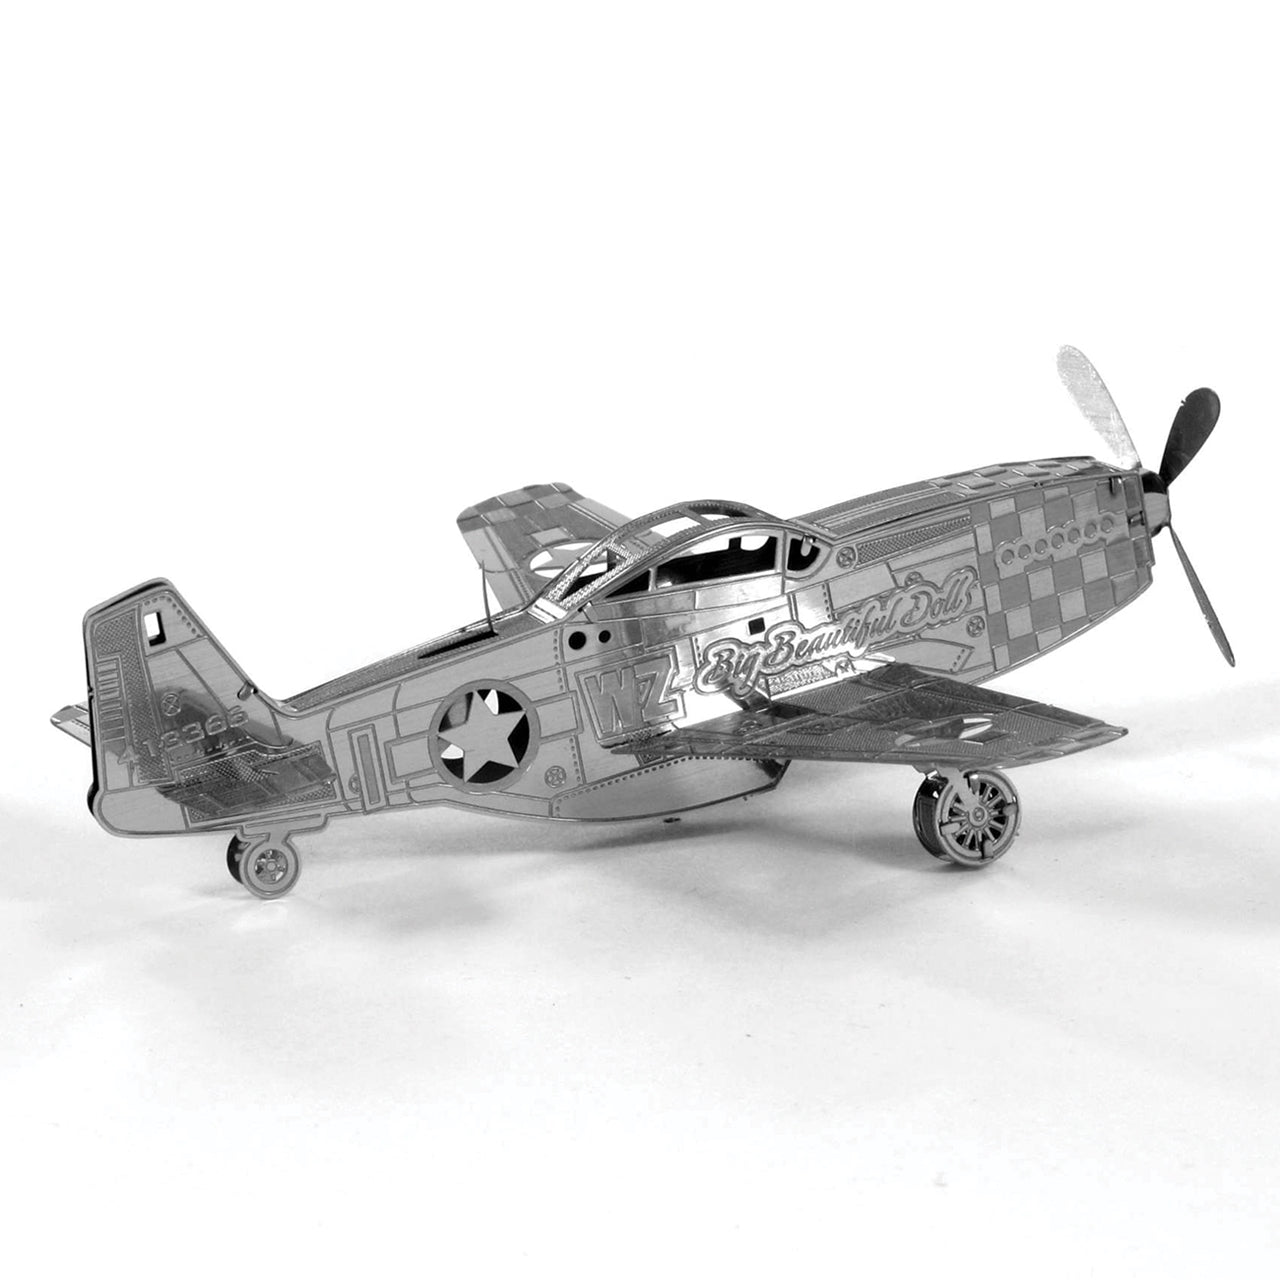 FMW003 P-51 मस्टैंग हवाई जहाज (निर्माण योग्य) 